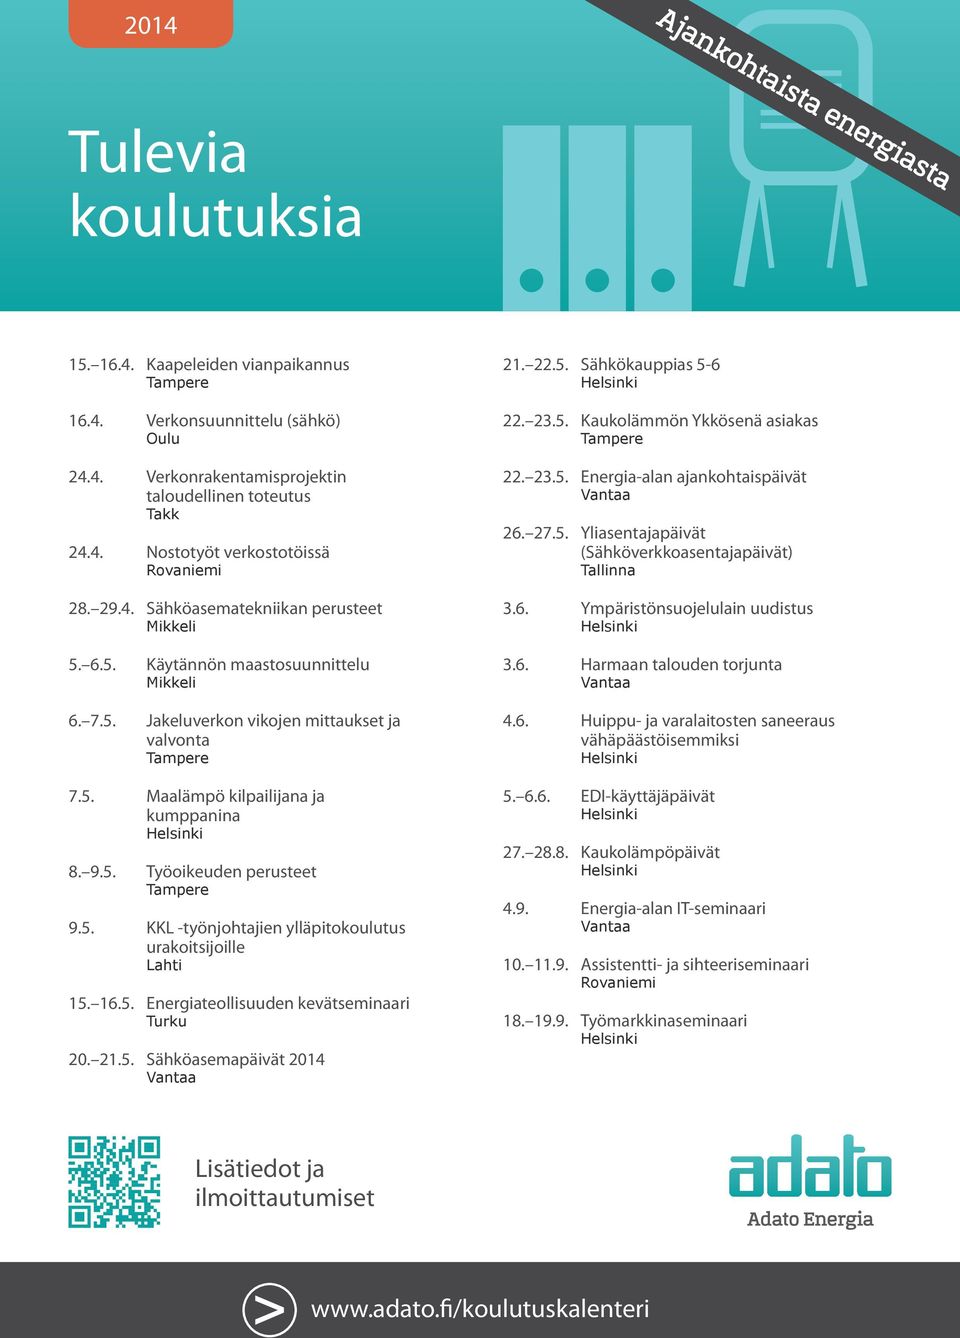 5. KKL -työnjohtajien ylläpitokoulutus urakoitsijoille Lahti 15. 16.5. Energiateollisuuden kevätseminaari Turku 20. 21.5. Sähköasemapäivät 2014 21. 22.5. Sähkökauppias 5-6 22. 23.5. Kaukolämmön Ykkösenä asiakas 22.